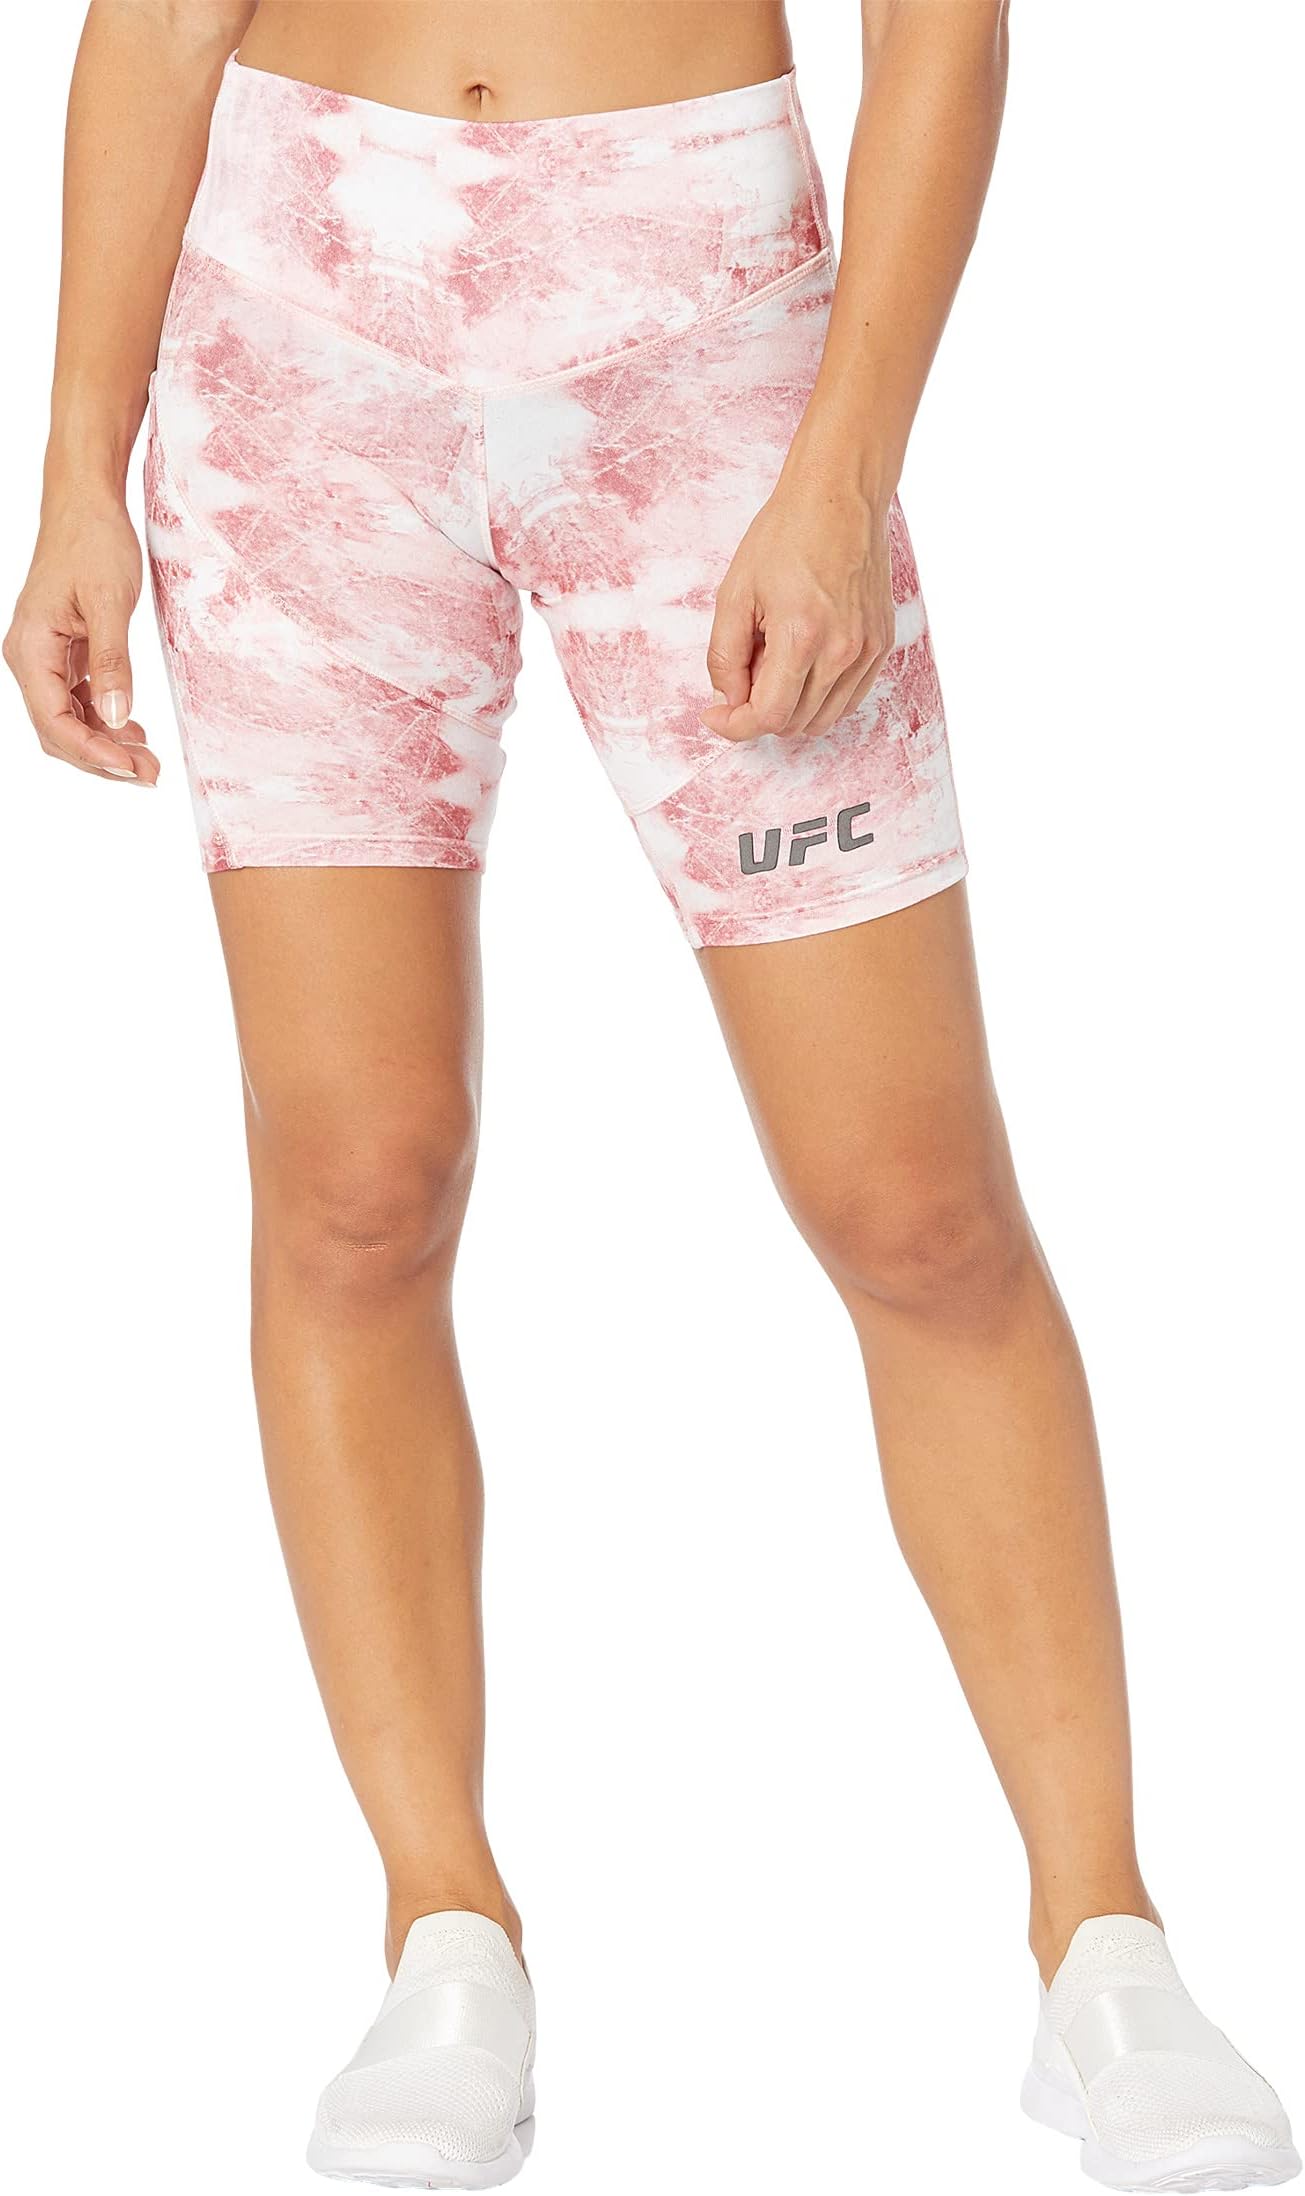 Шорты для экстремальных тренировок 9 дюймов с кварцевым принтом UFC, цвет Blushing Rose